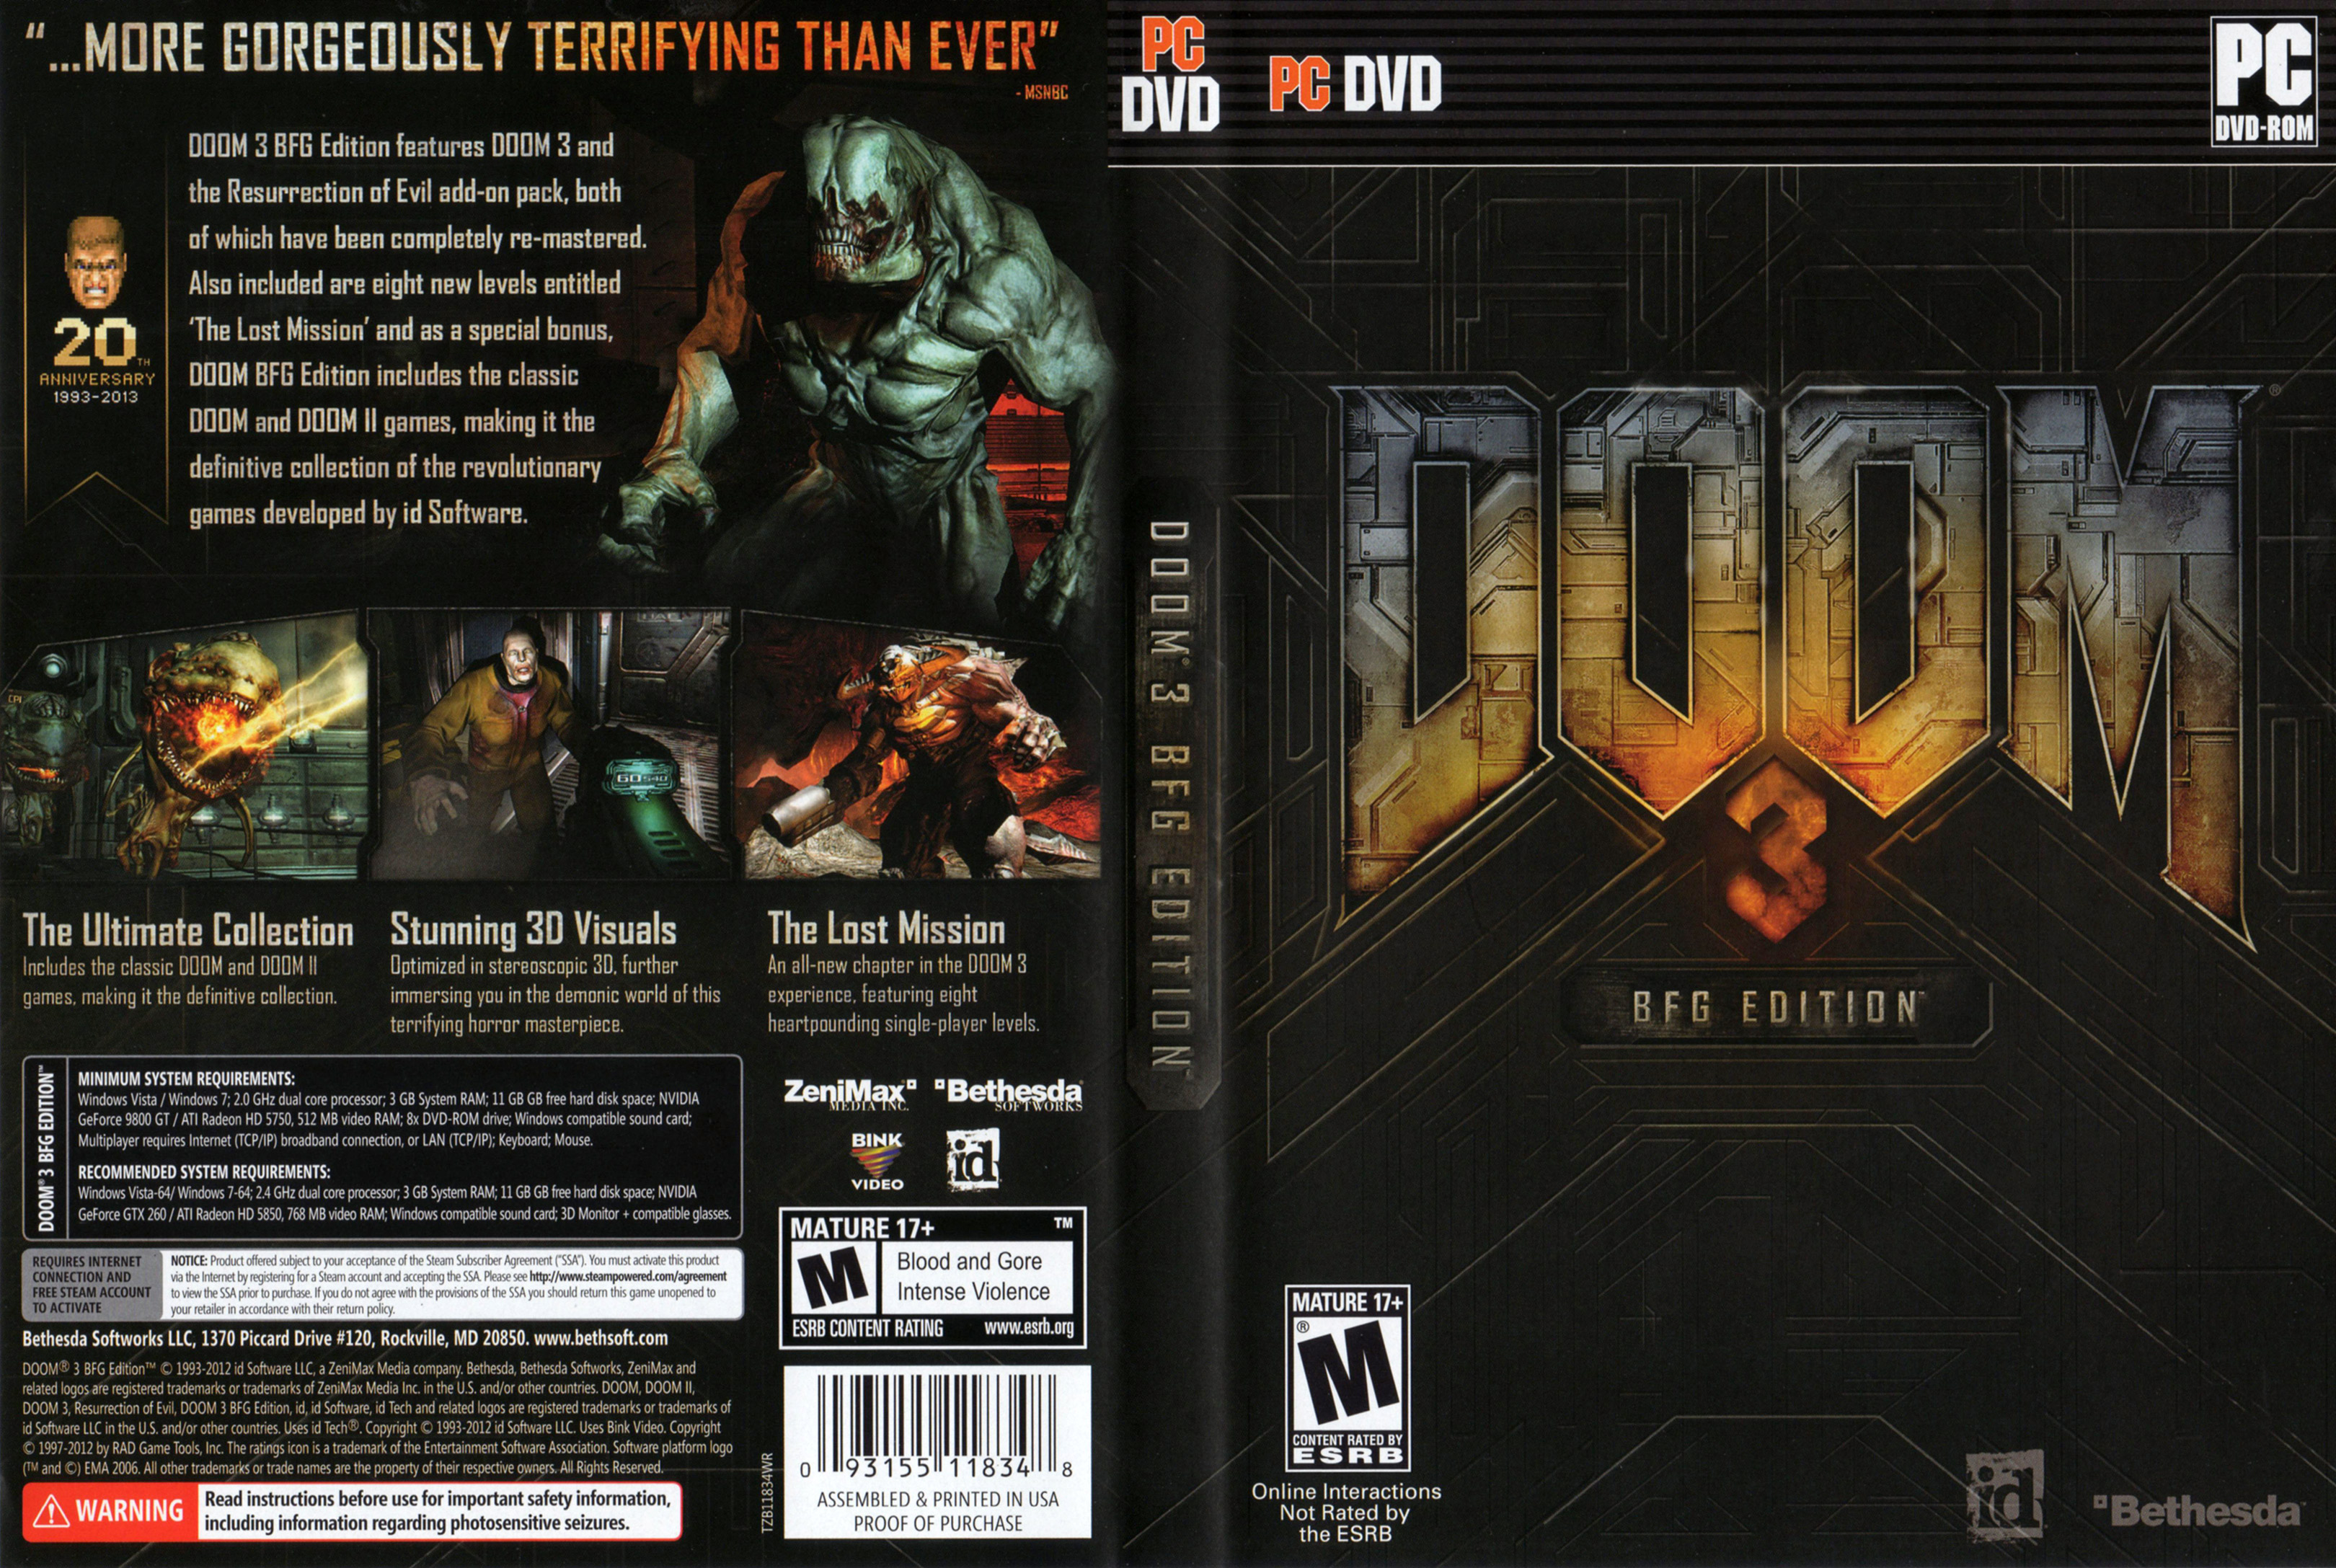 Doom 3: BFG Edition - DVD obal